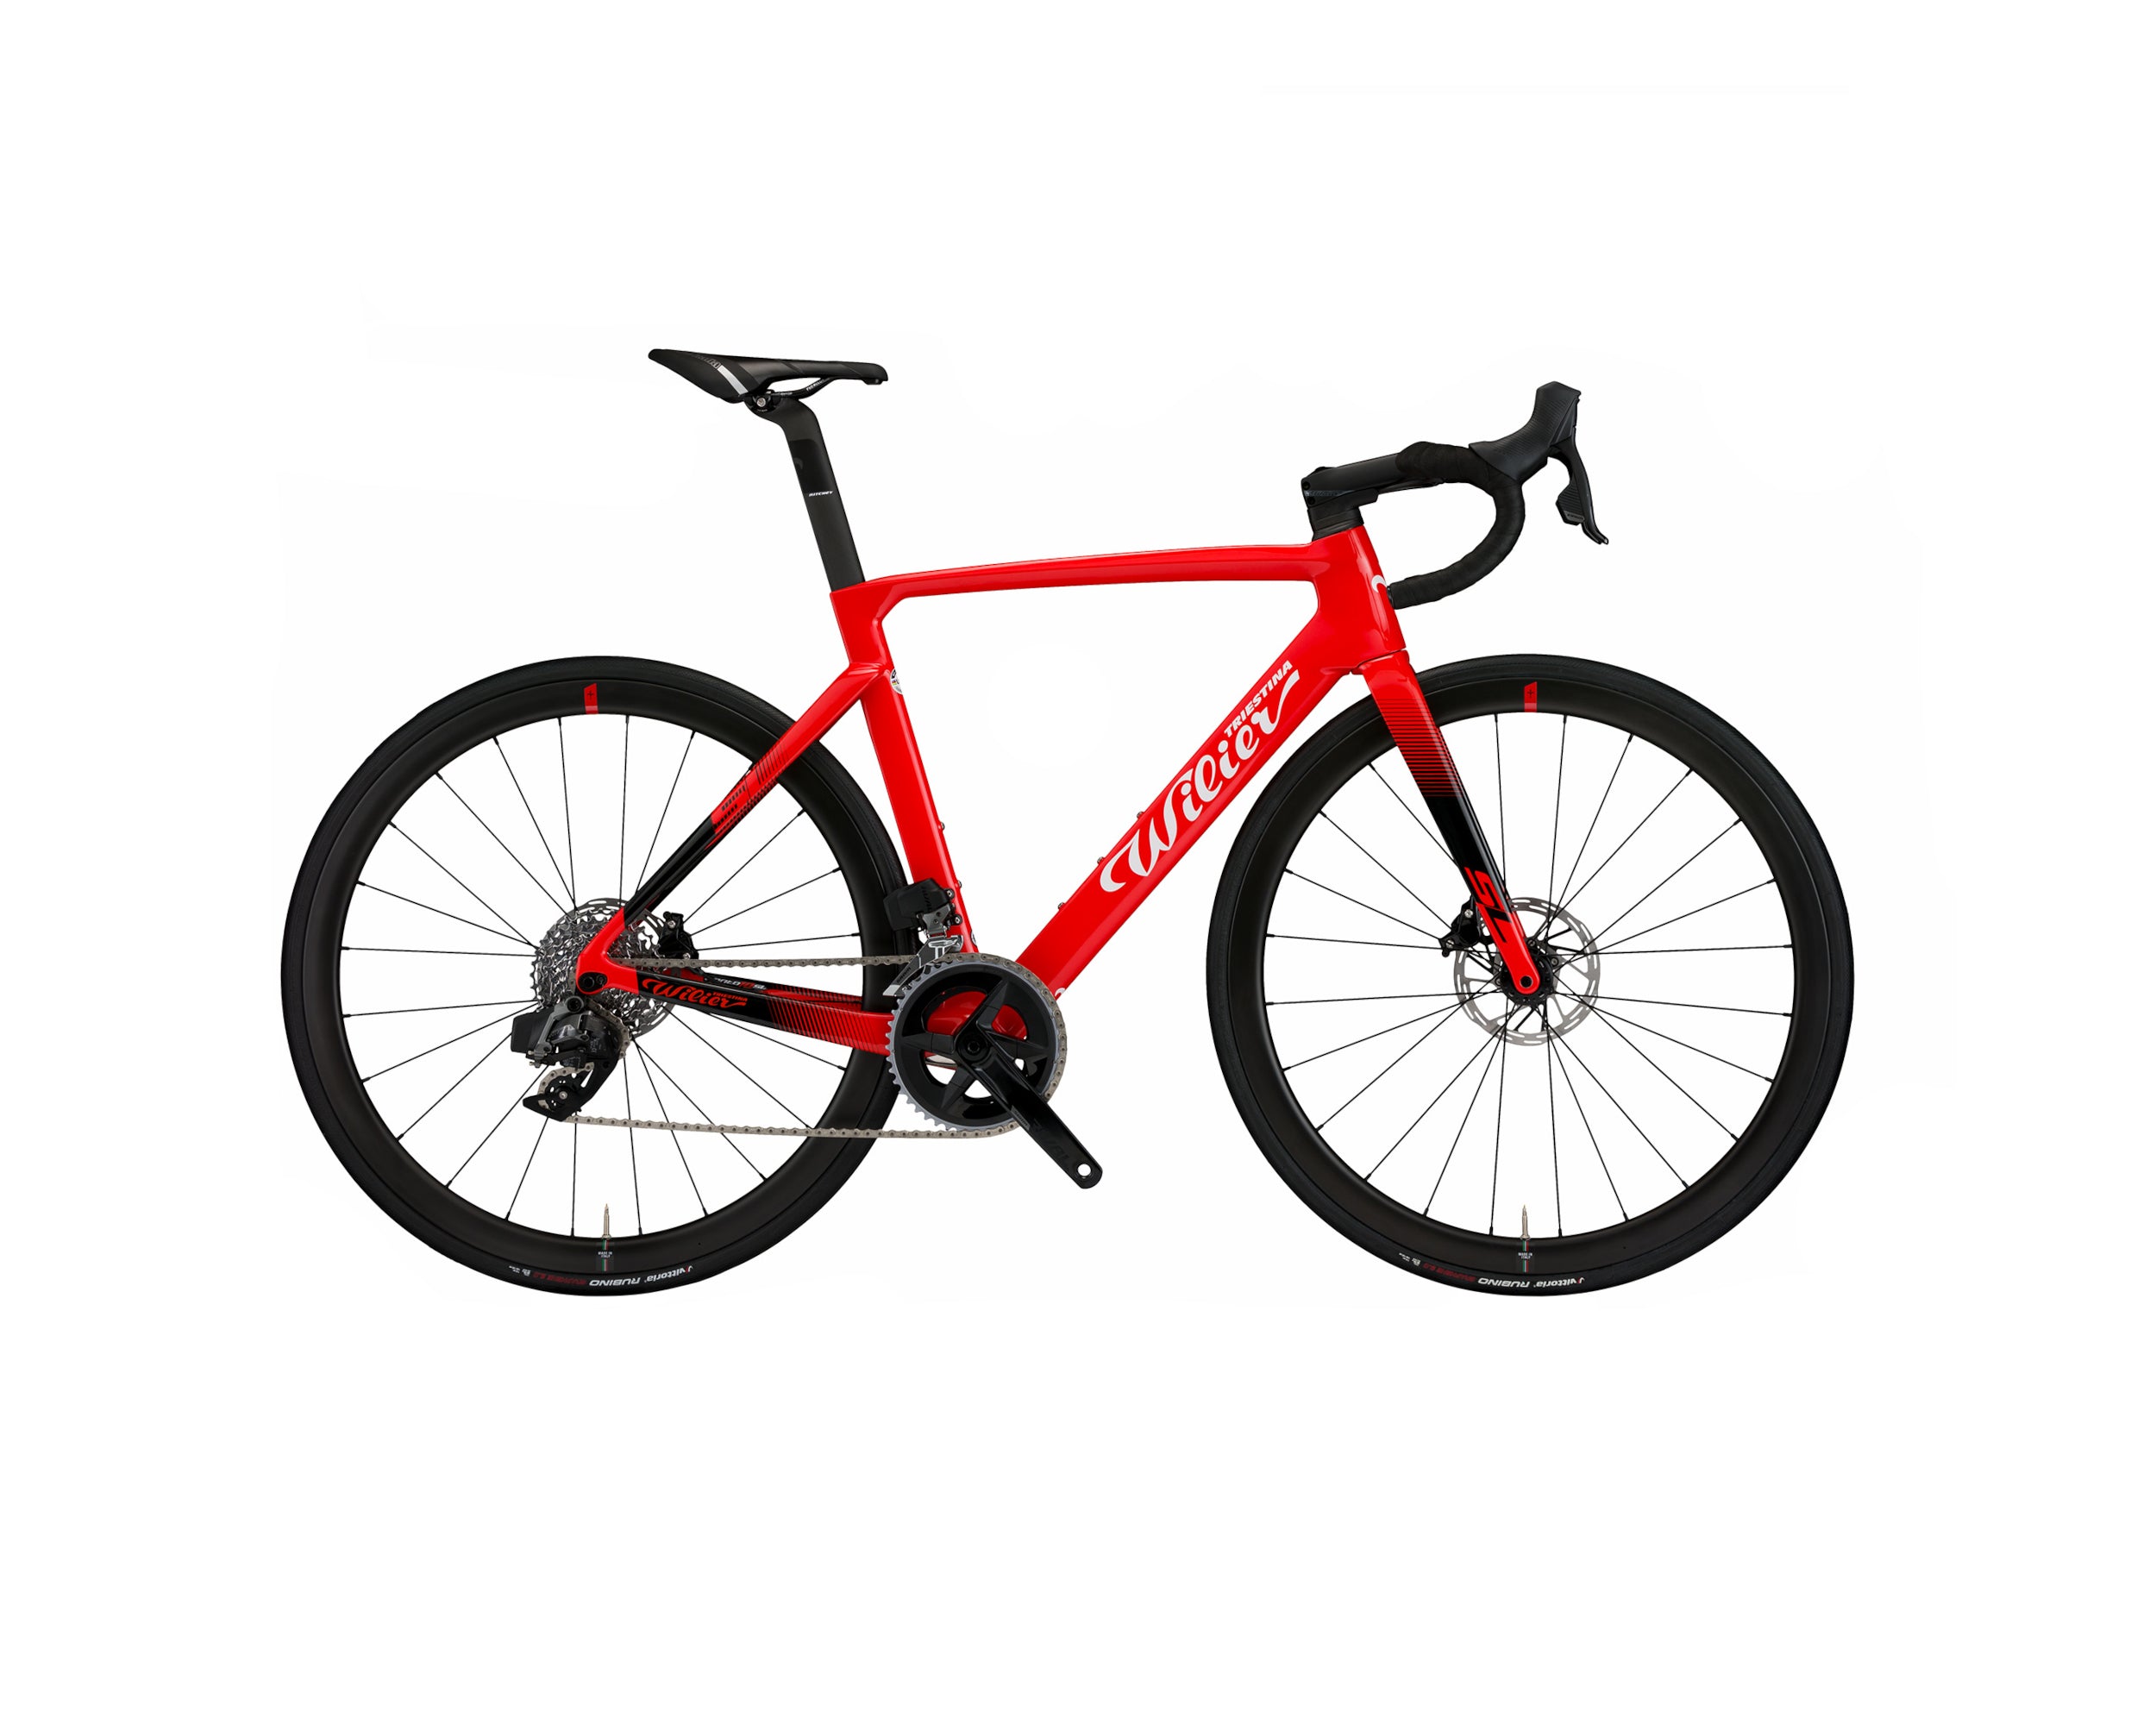 Wilier Cento10 SL dviratis / Red